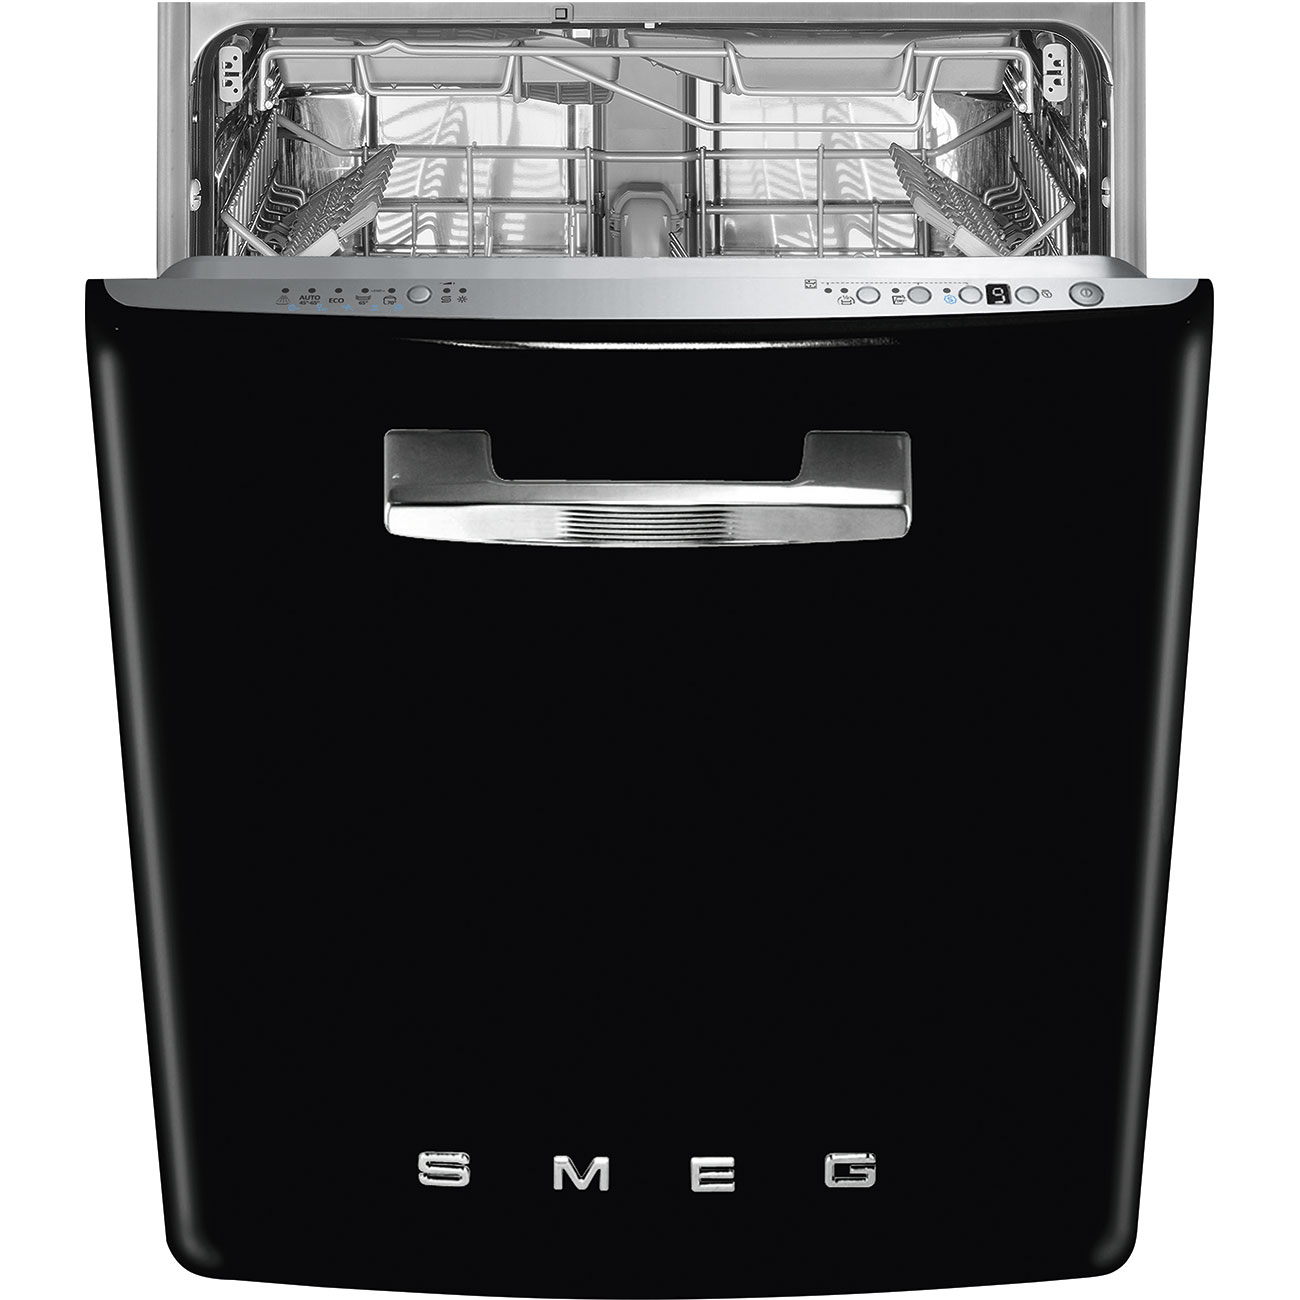 Посудомоечная машина 60 см купить в спб. Встраиваемая посудомоечная машина Smeg st2fabbl. Посудомоечная машина Smeg st122. Посудомоечная машина Smeg st2fabne. Smeg посудомоечная машина отдельностоящая.